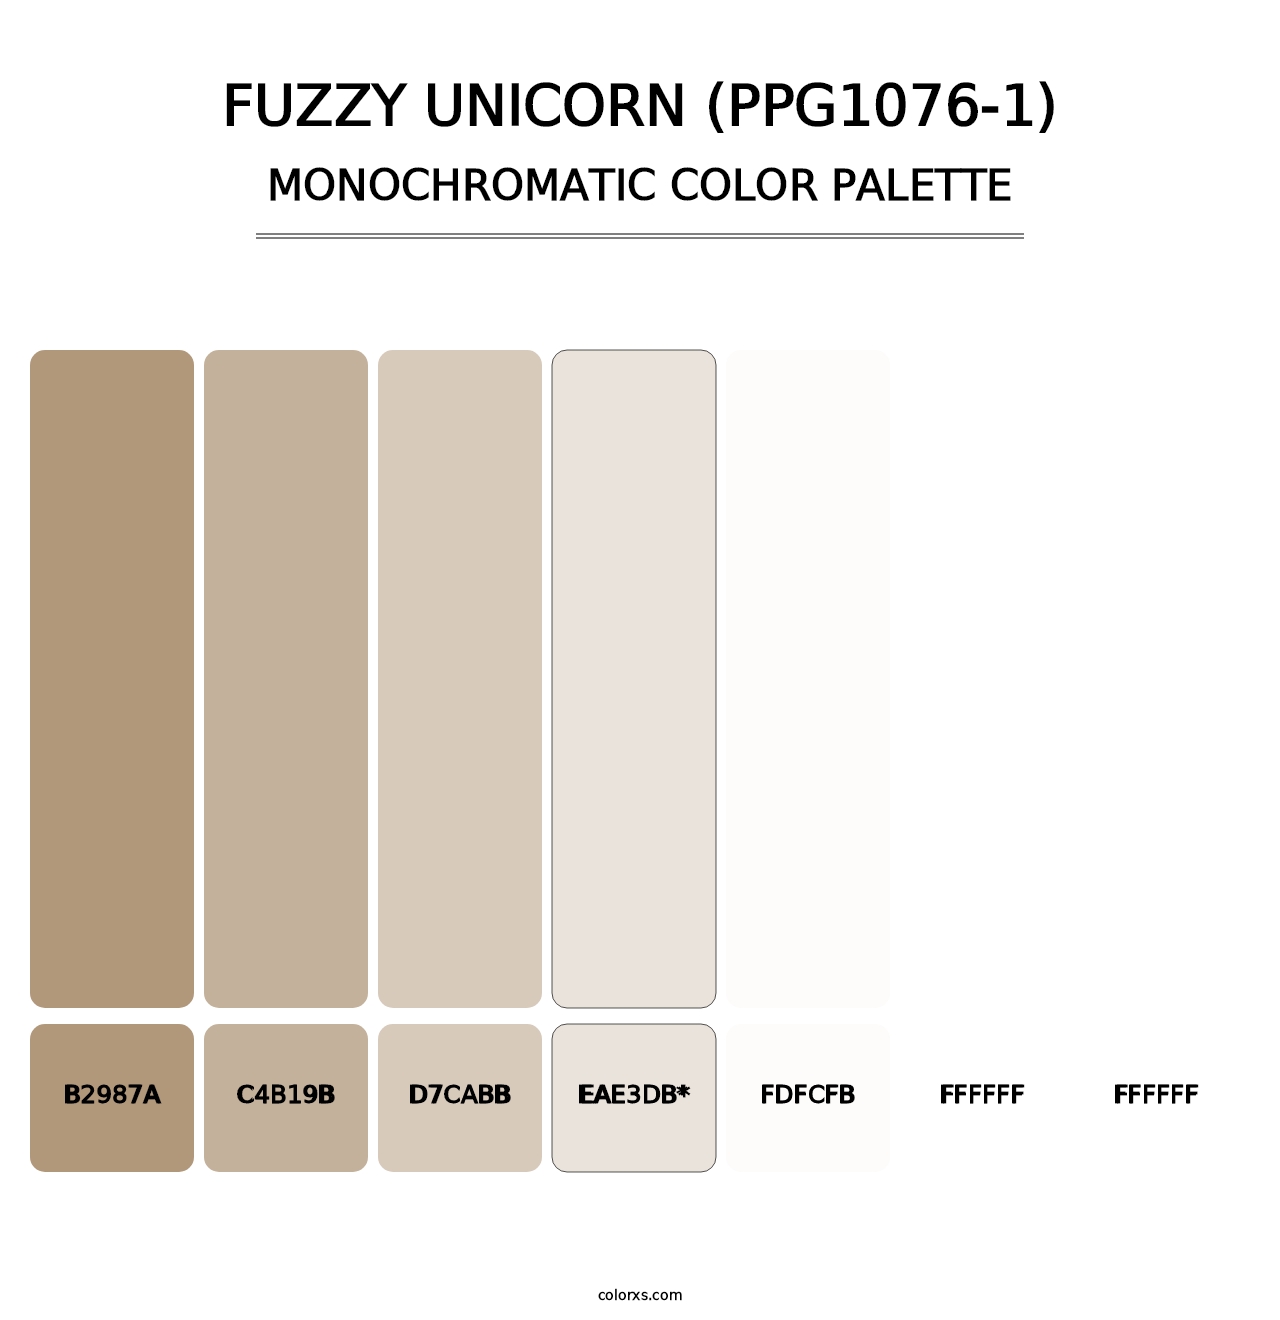 Fuzzy Unicorn (PPG1076-1) - Monochromatic Color Palette